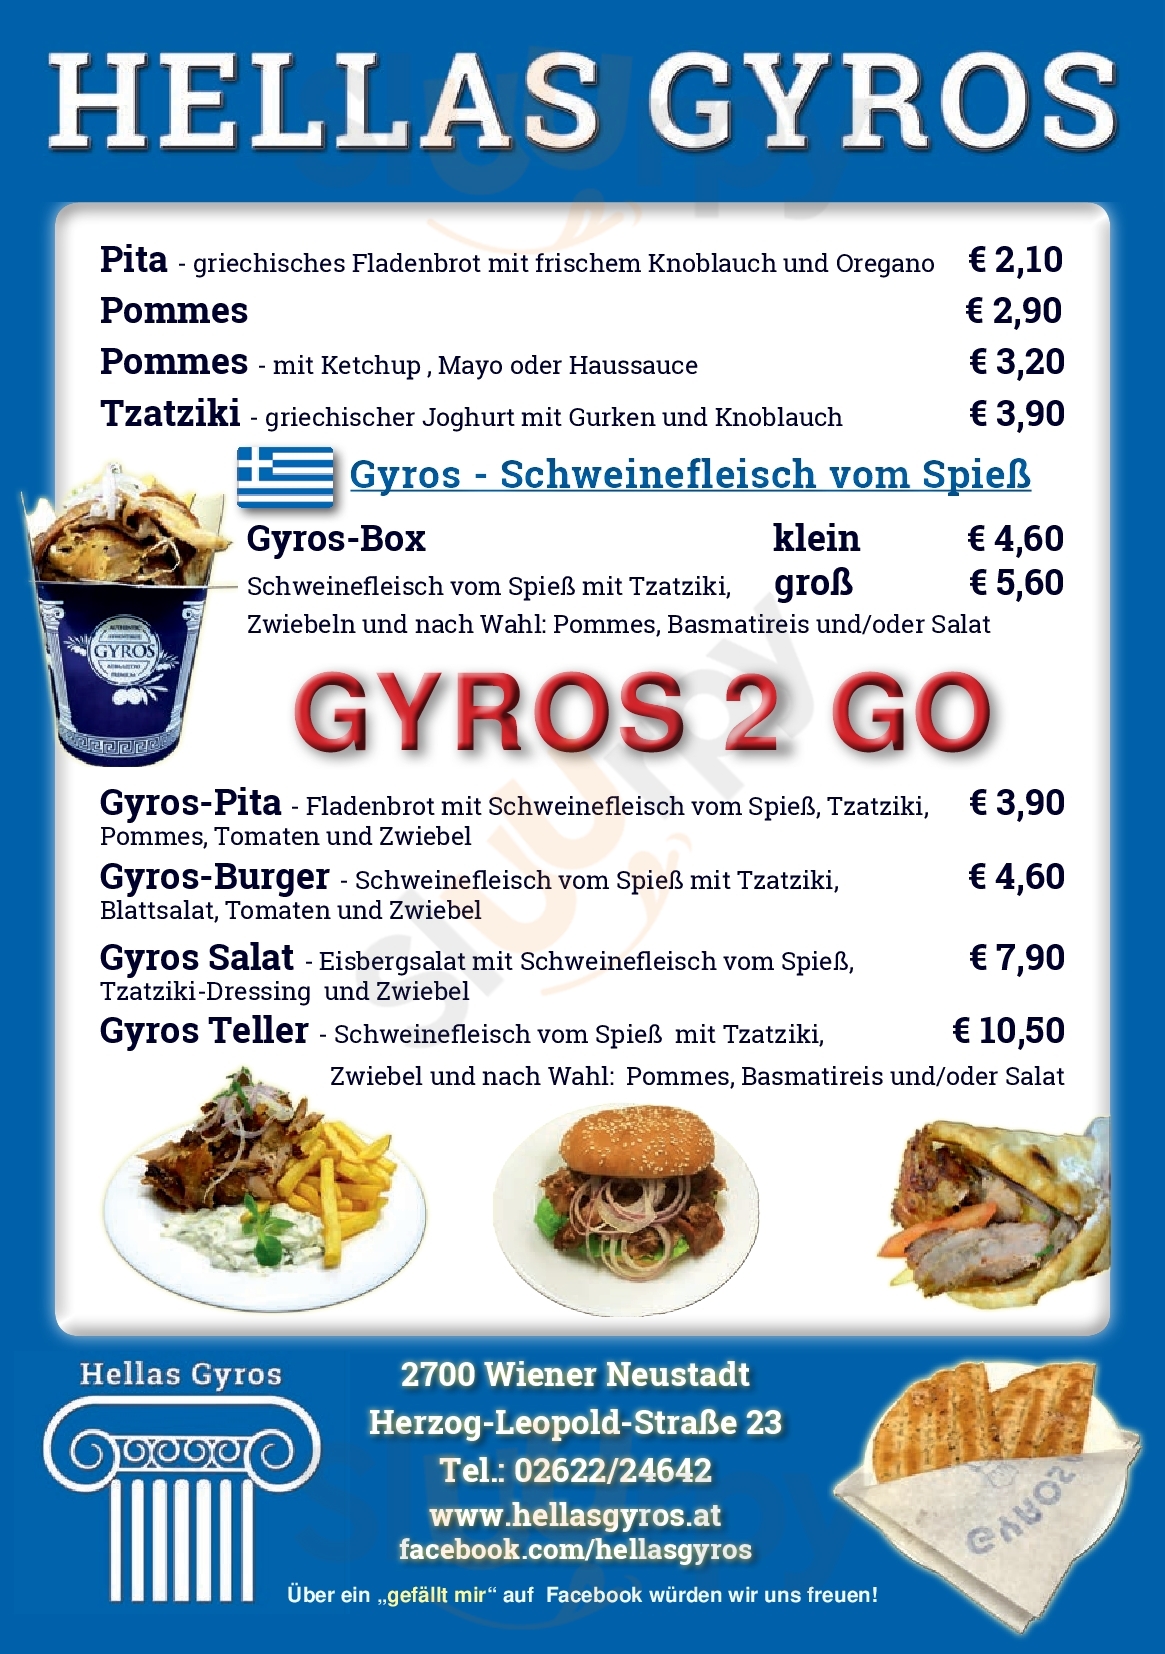 Hellas Gyros Wiener Neustadt Menu - 1